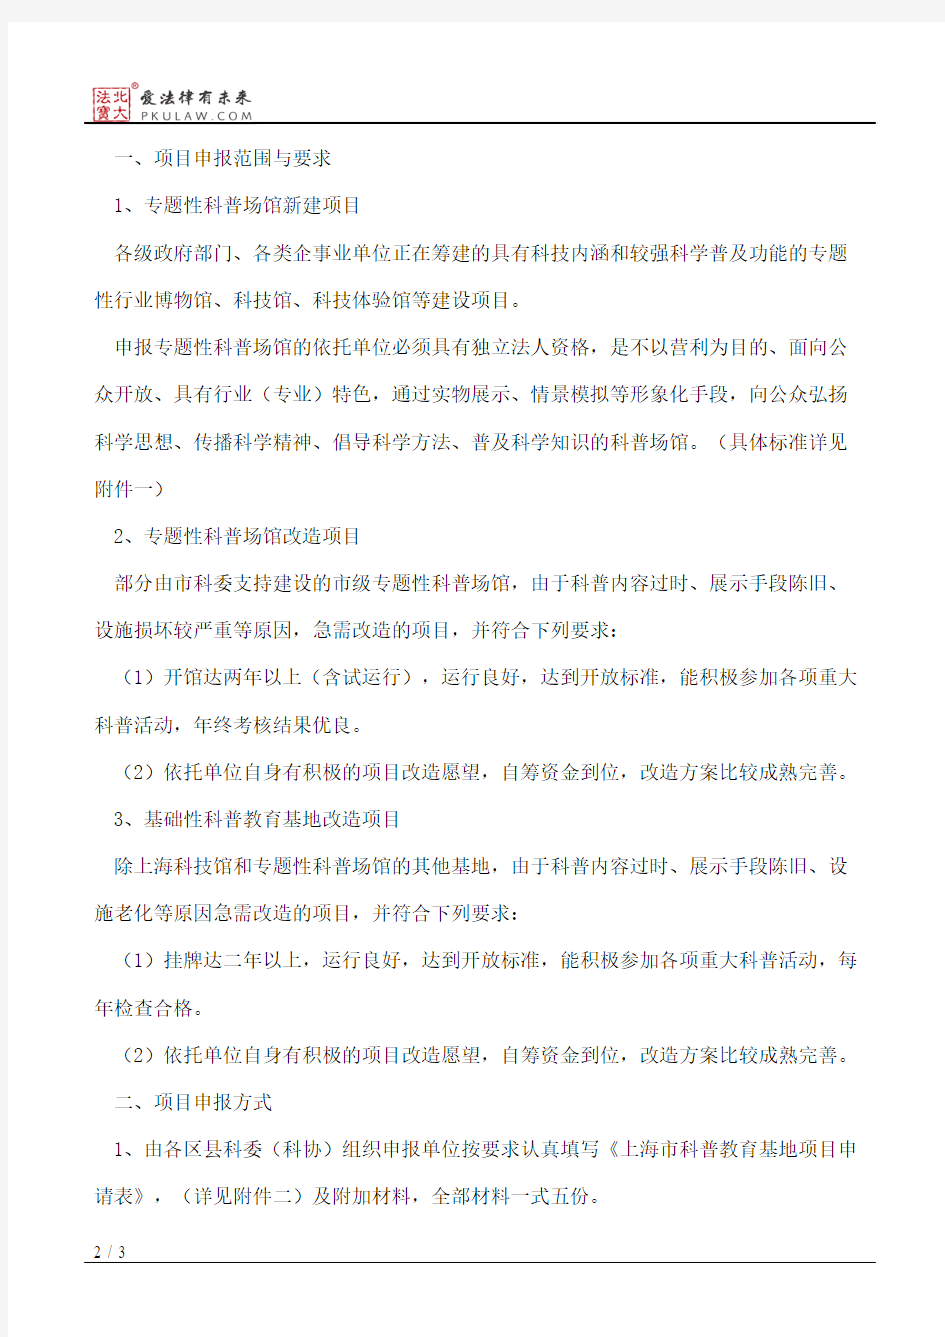 上海市科学技术委员会关于申报2010年上海市科普教育基地项目的有